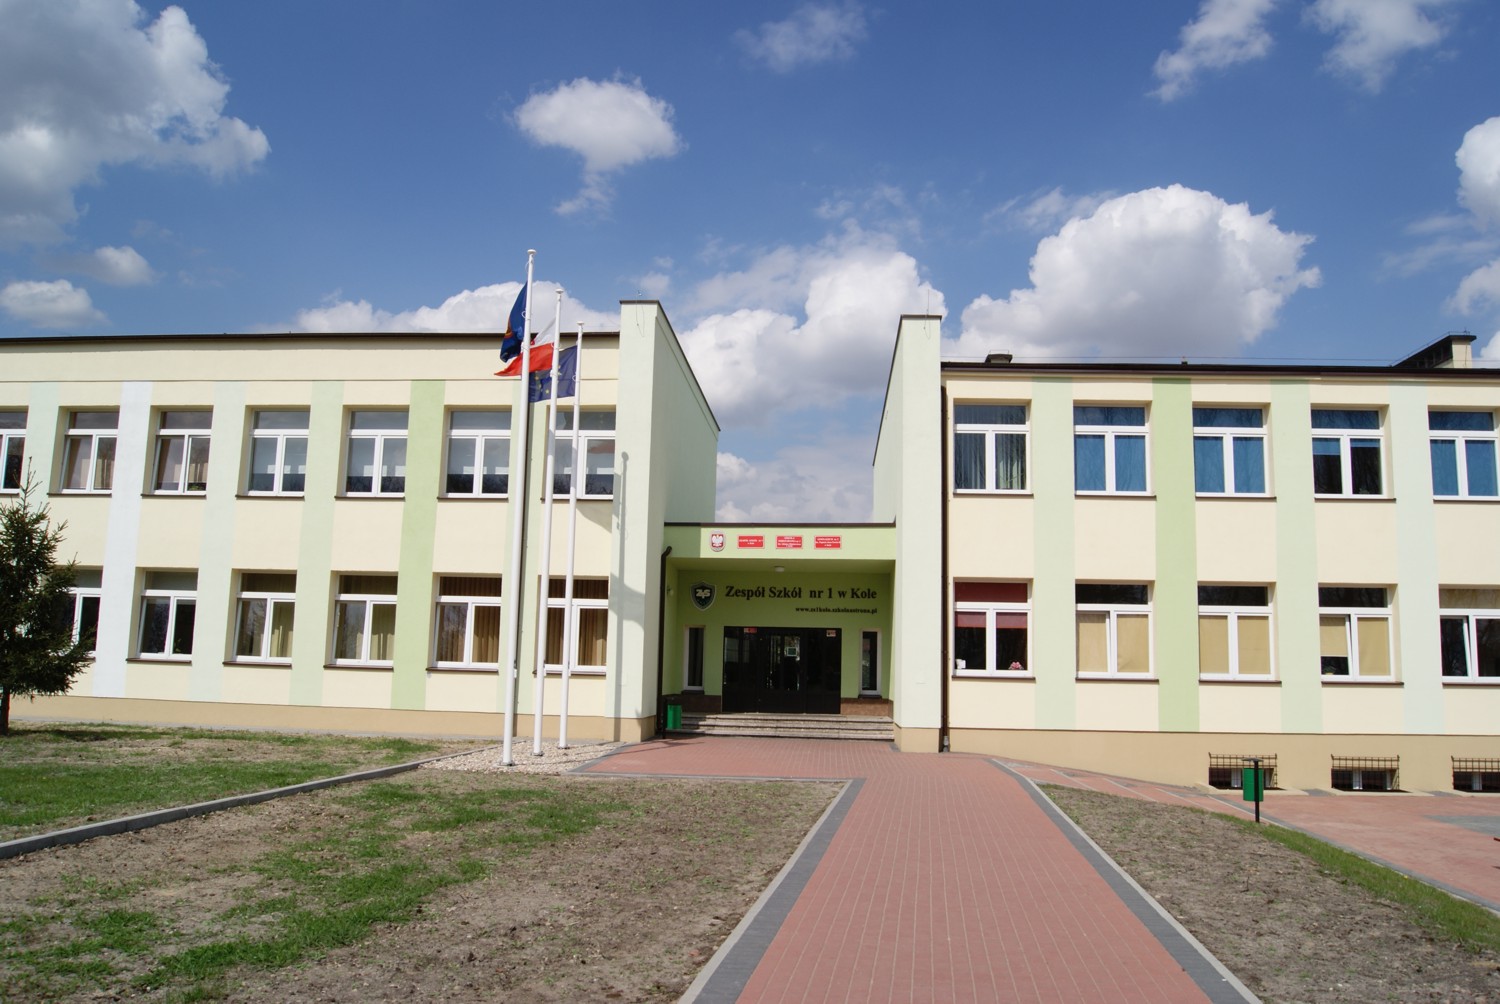 Szkoła Podstawowa Nr 1 Morena Szkoły podstawowe - Miasto Koło - oficjalny portal informacyjny